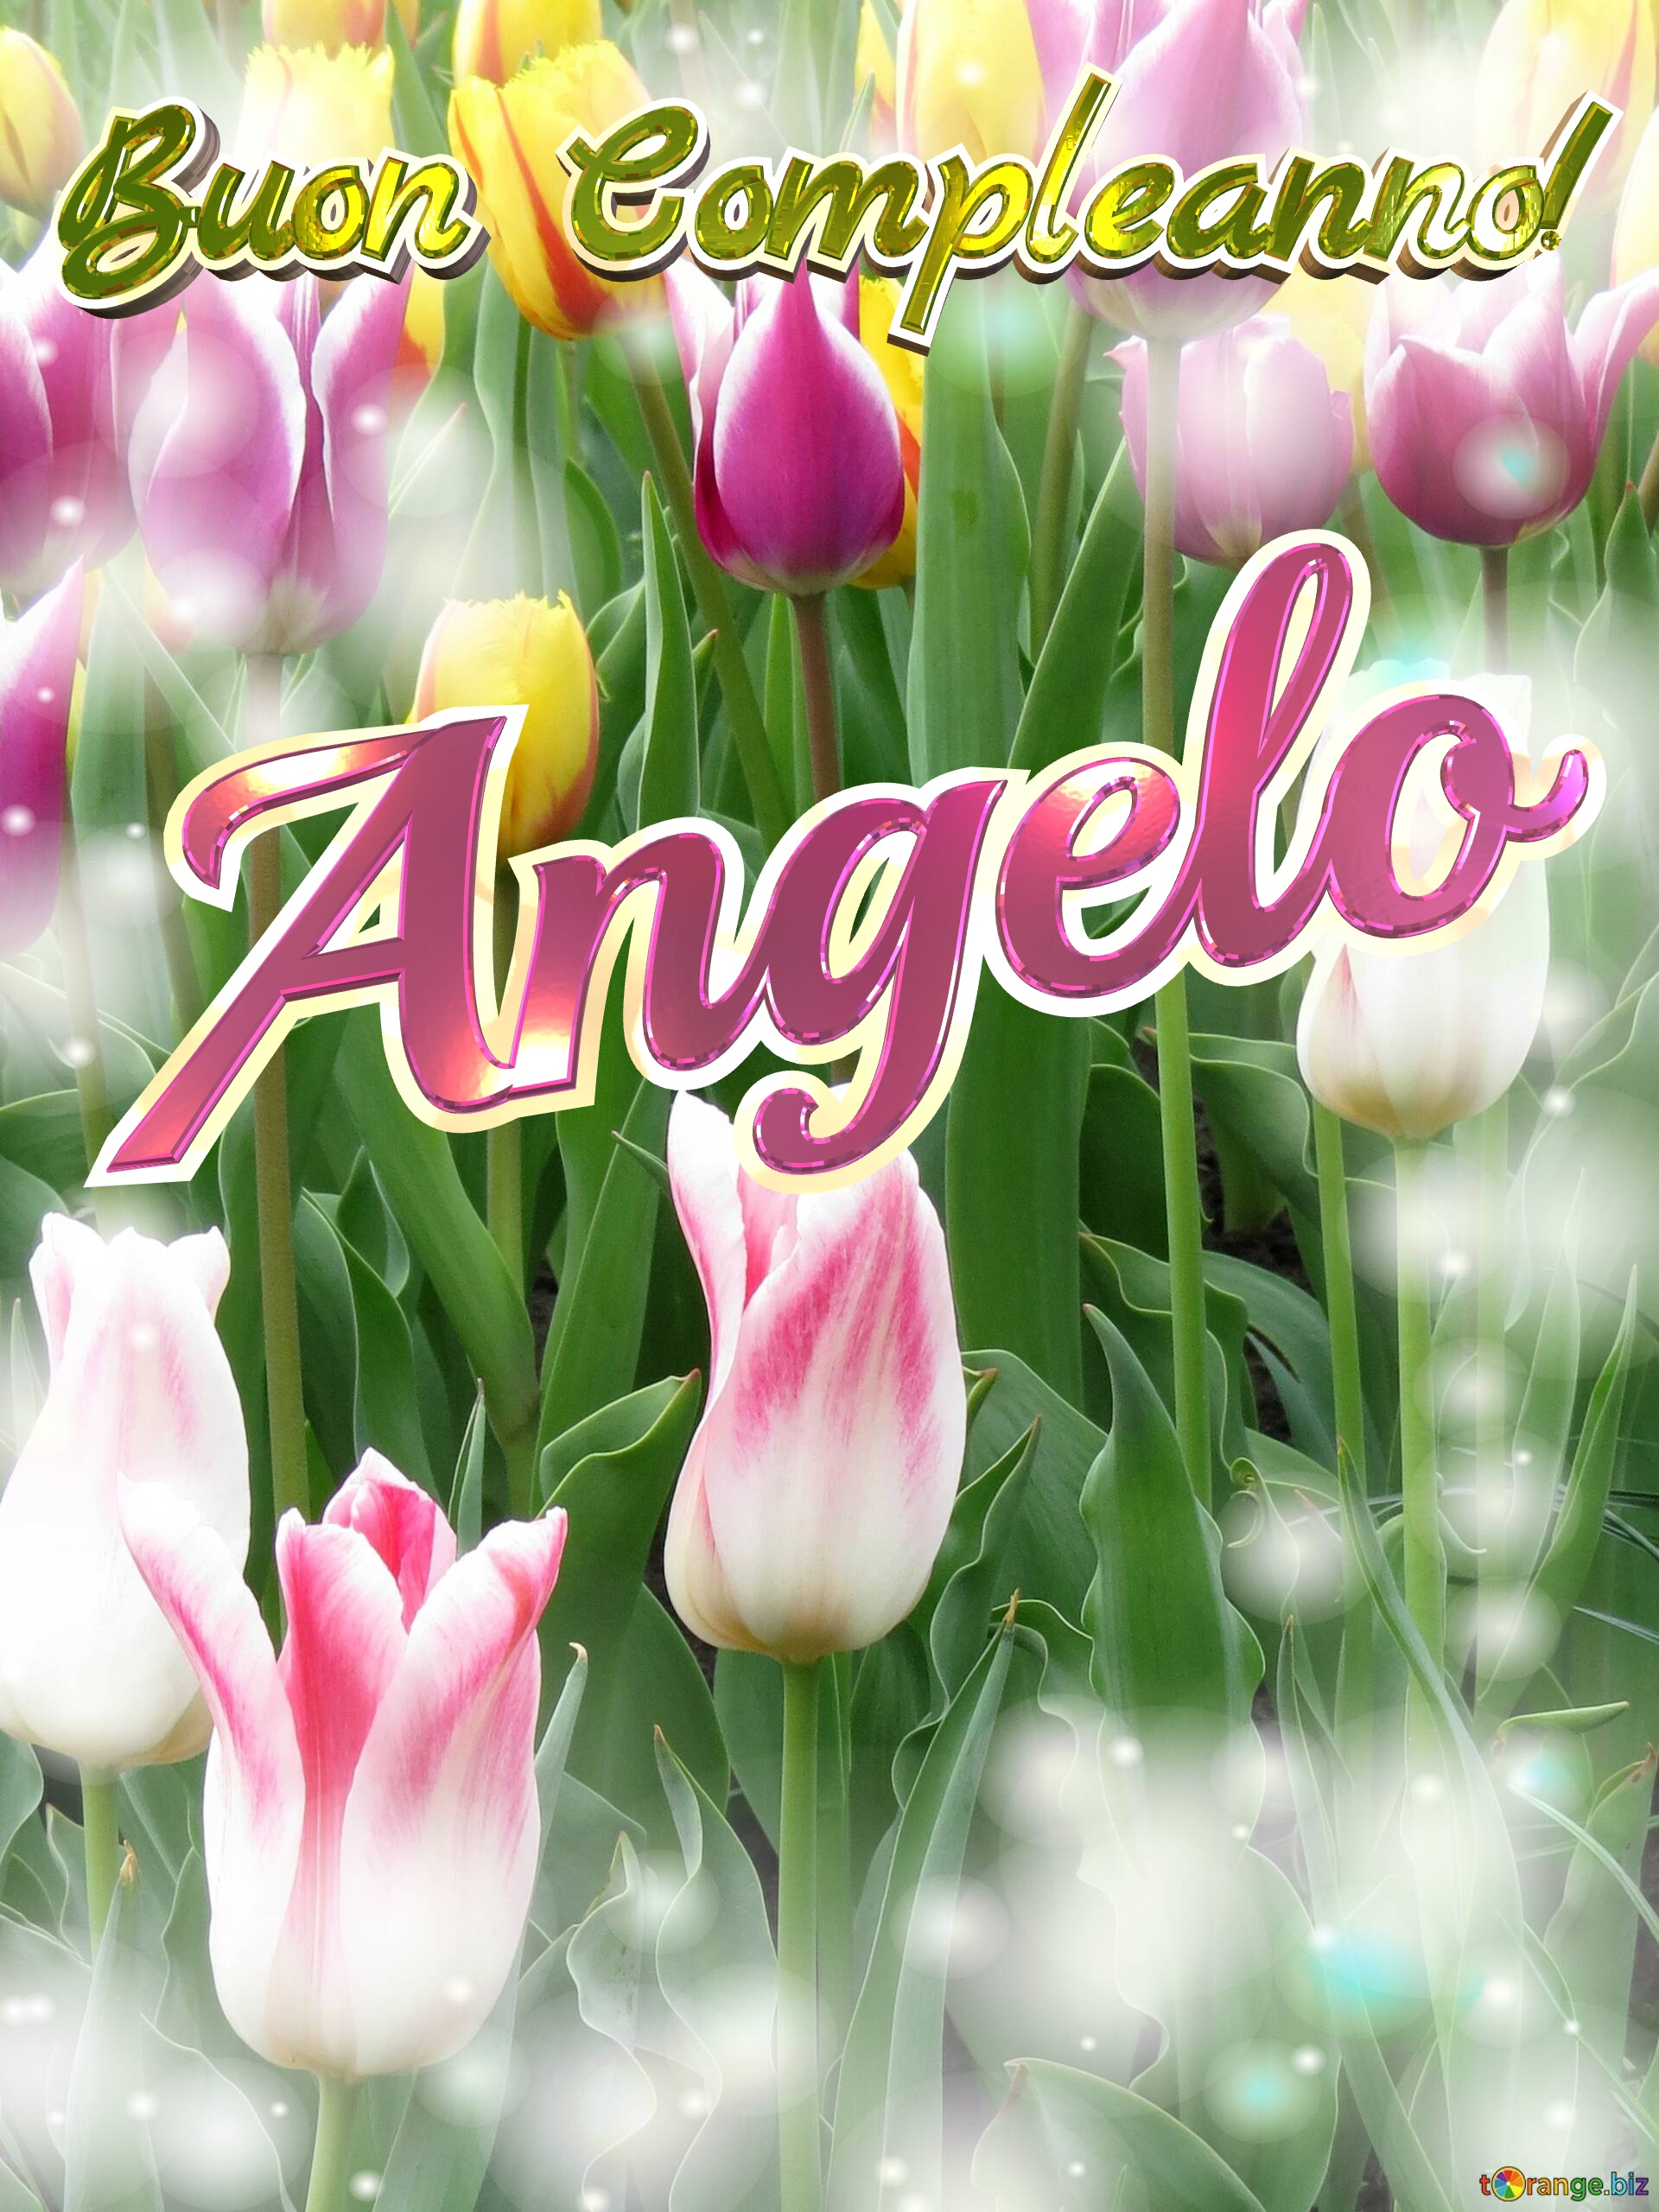 Buon Compleanno! Angelo  Che questi tulipani ti portino la pace e la tranquillità che stai cercando nella tua vita. №0